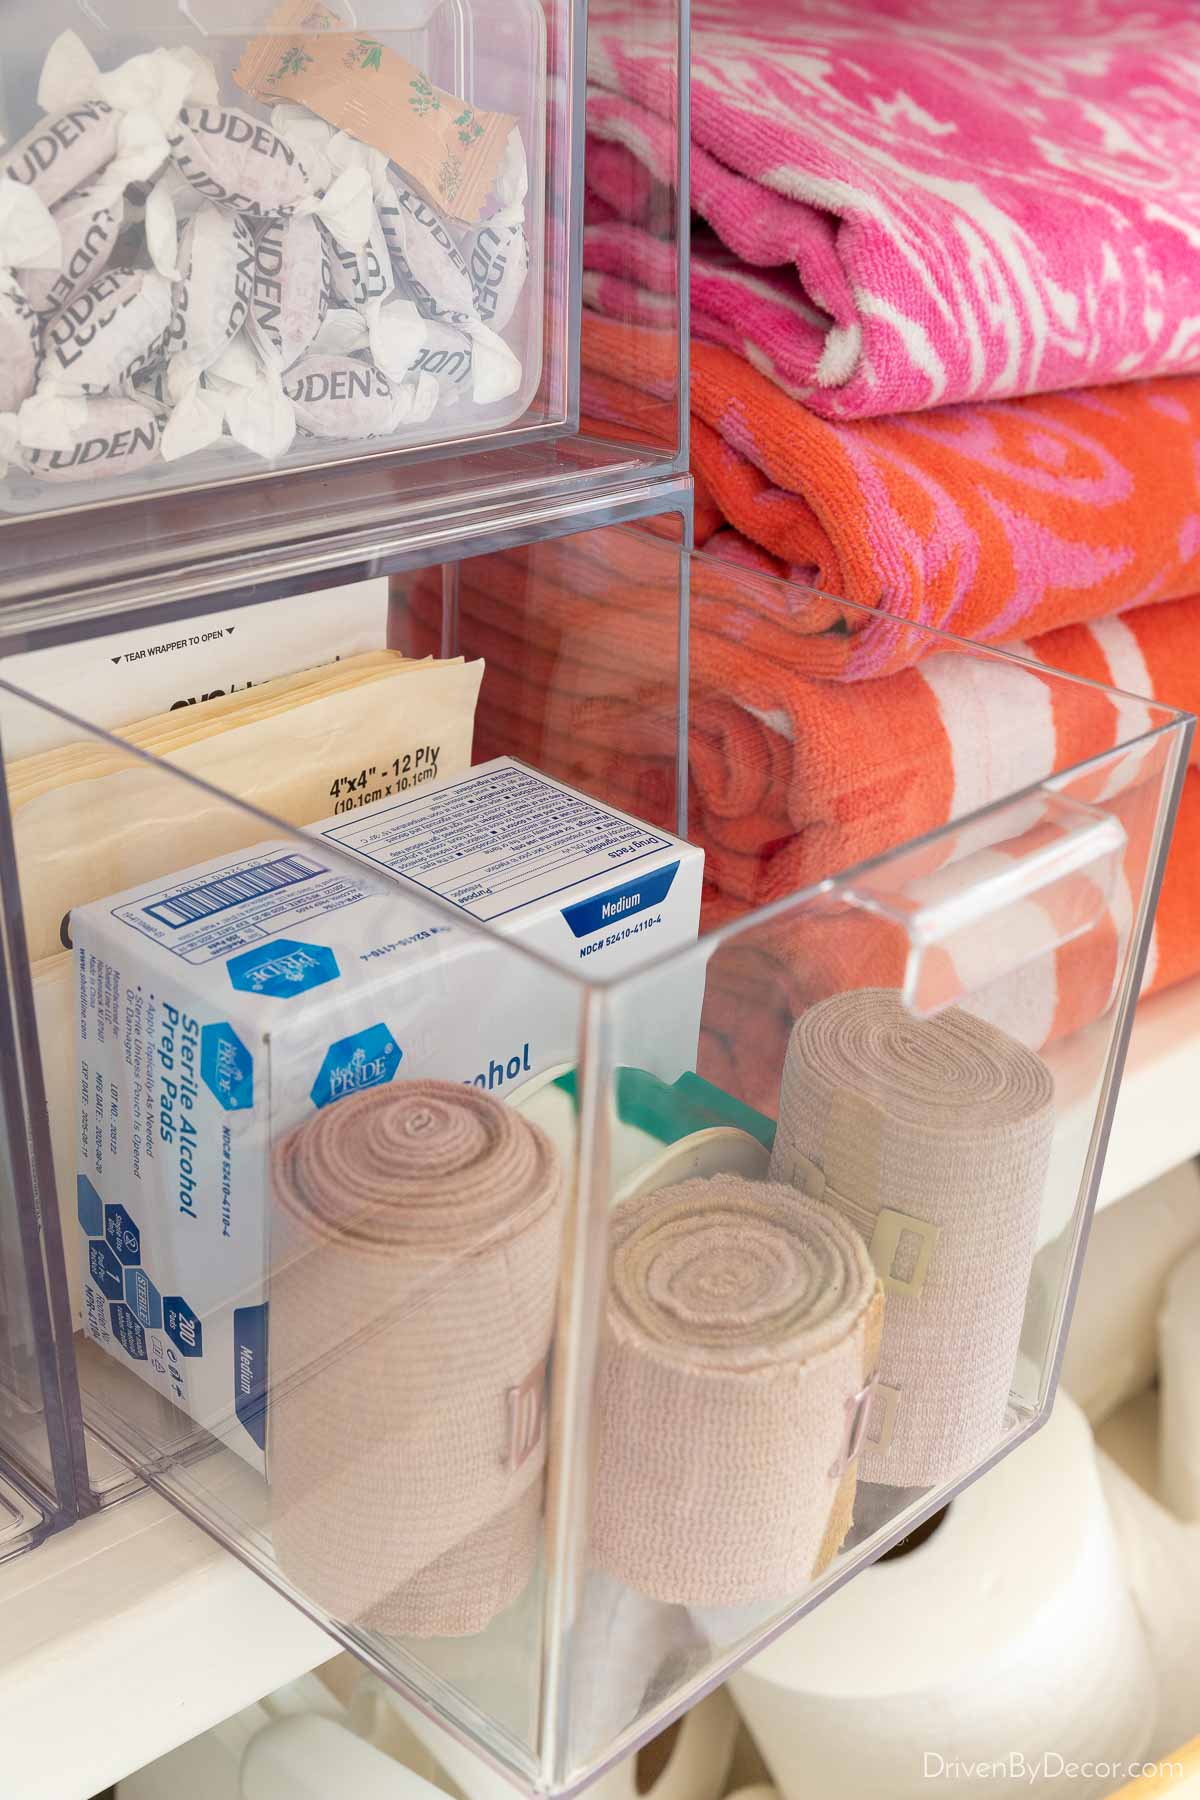 10 Linen Closet Organization Ideas for a Clutter-Free Closet